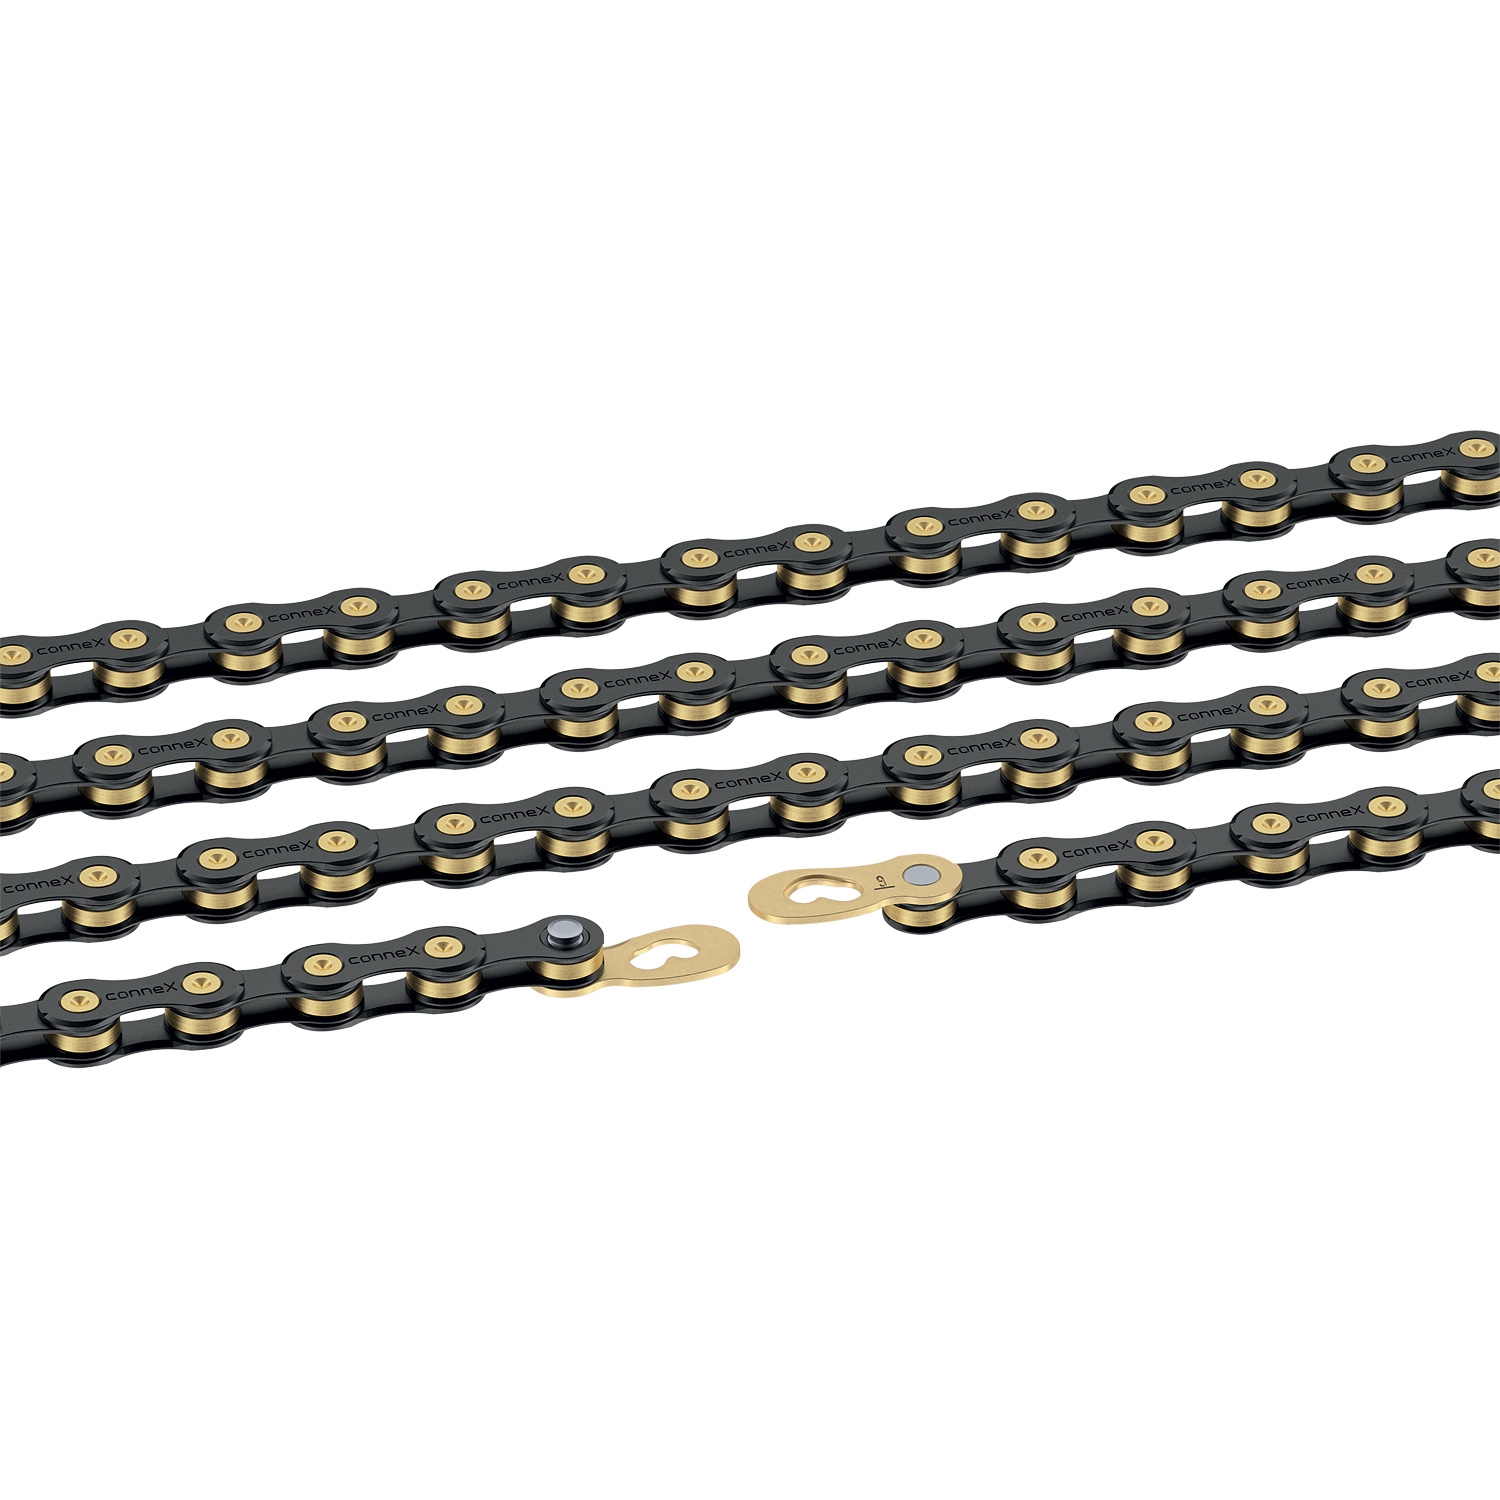 řetěz CONNEX 9sB pro 9-kolo, černo-zlatý